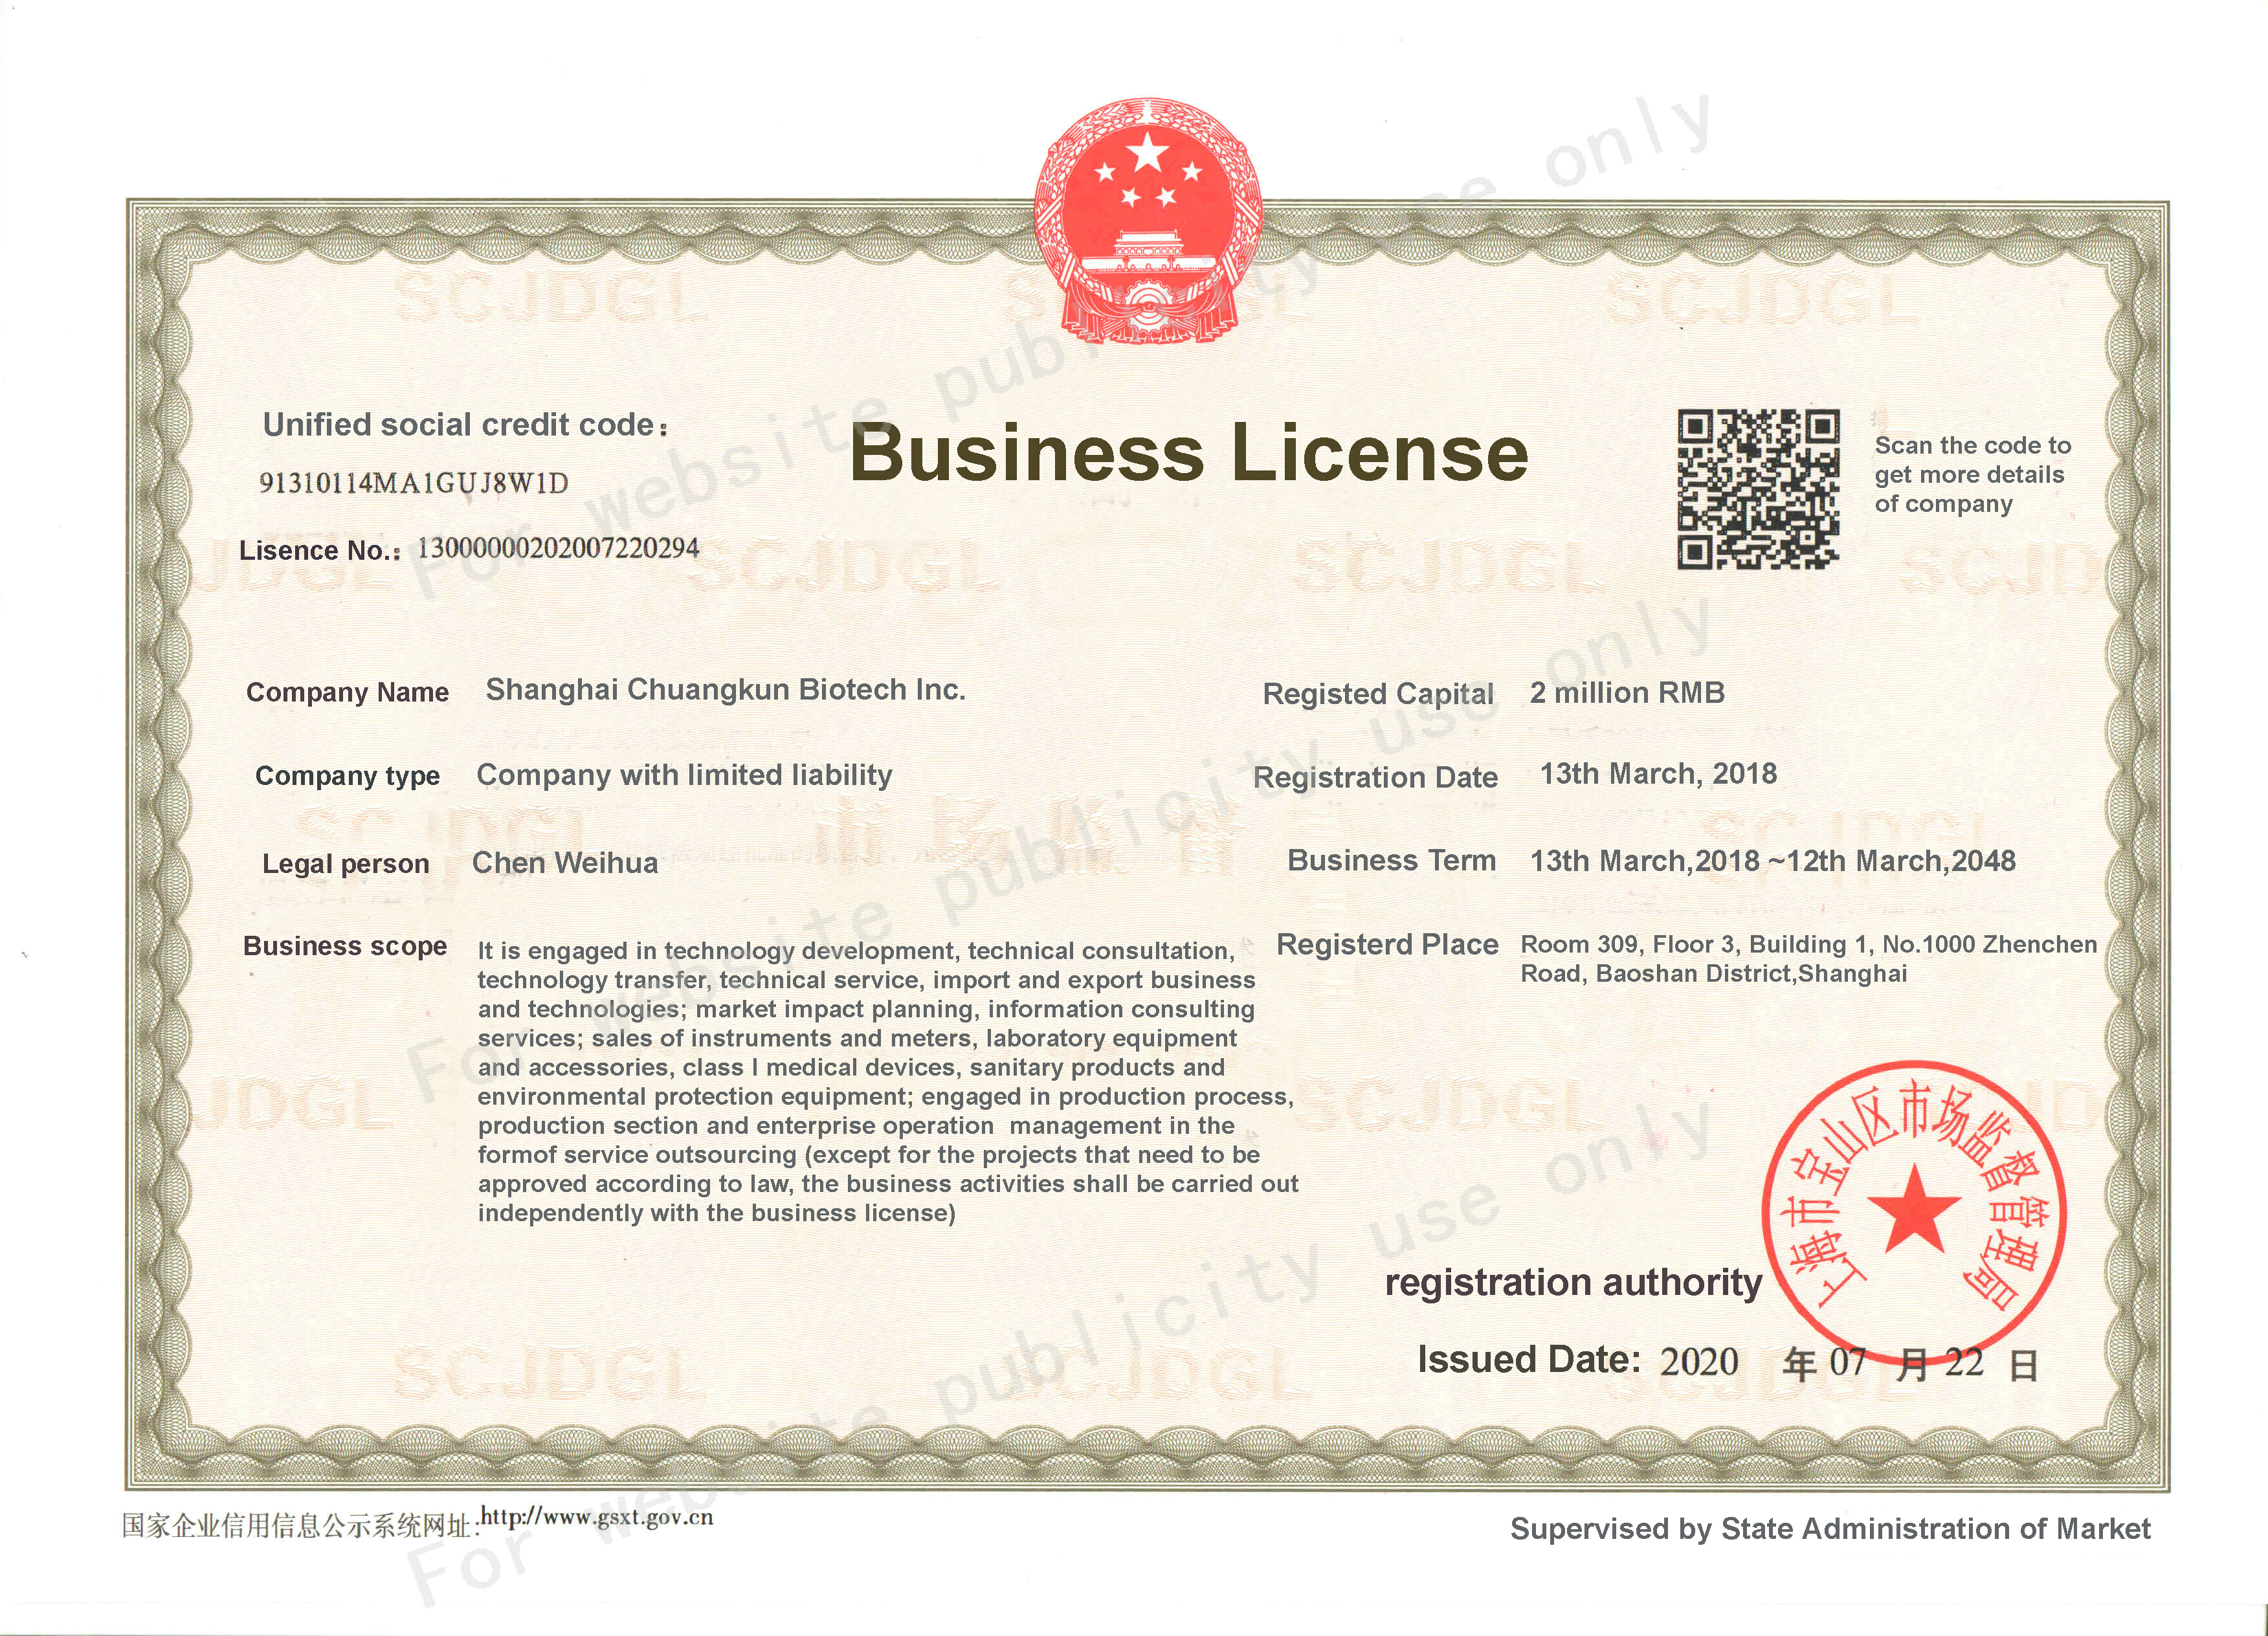 Licencja biznesowa CHKBio – angielska